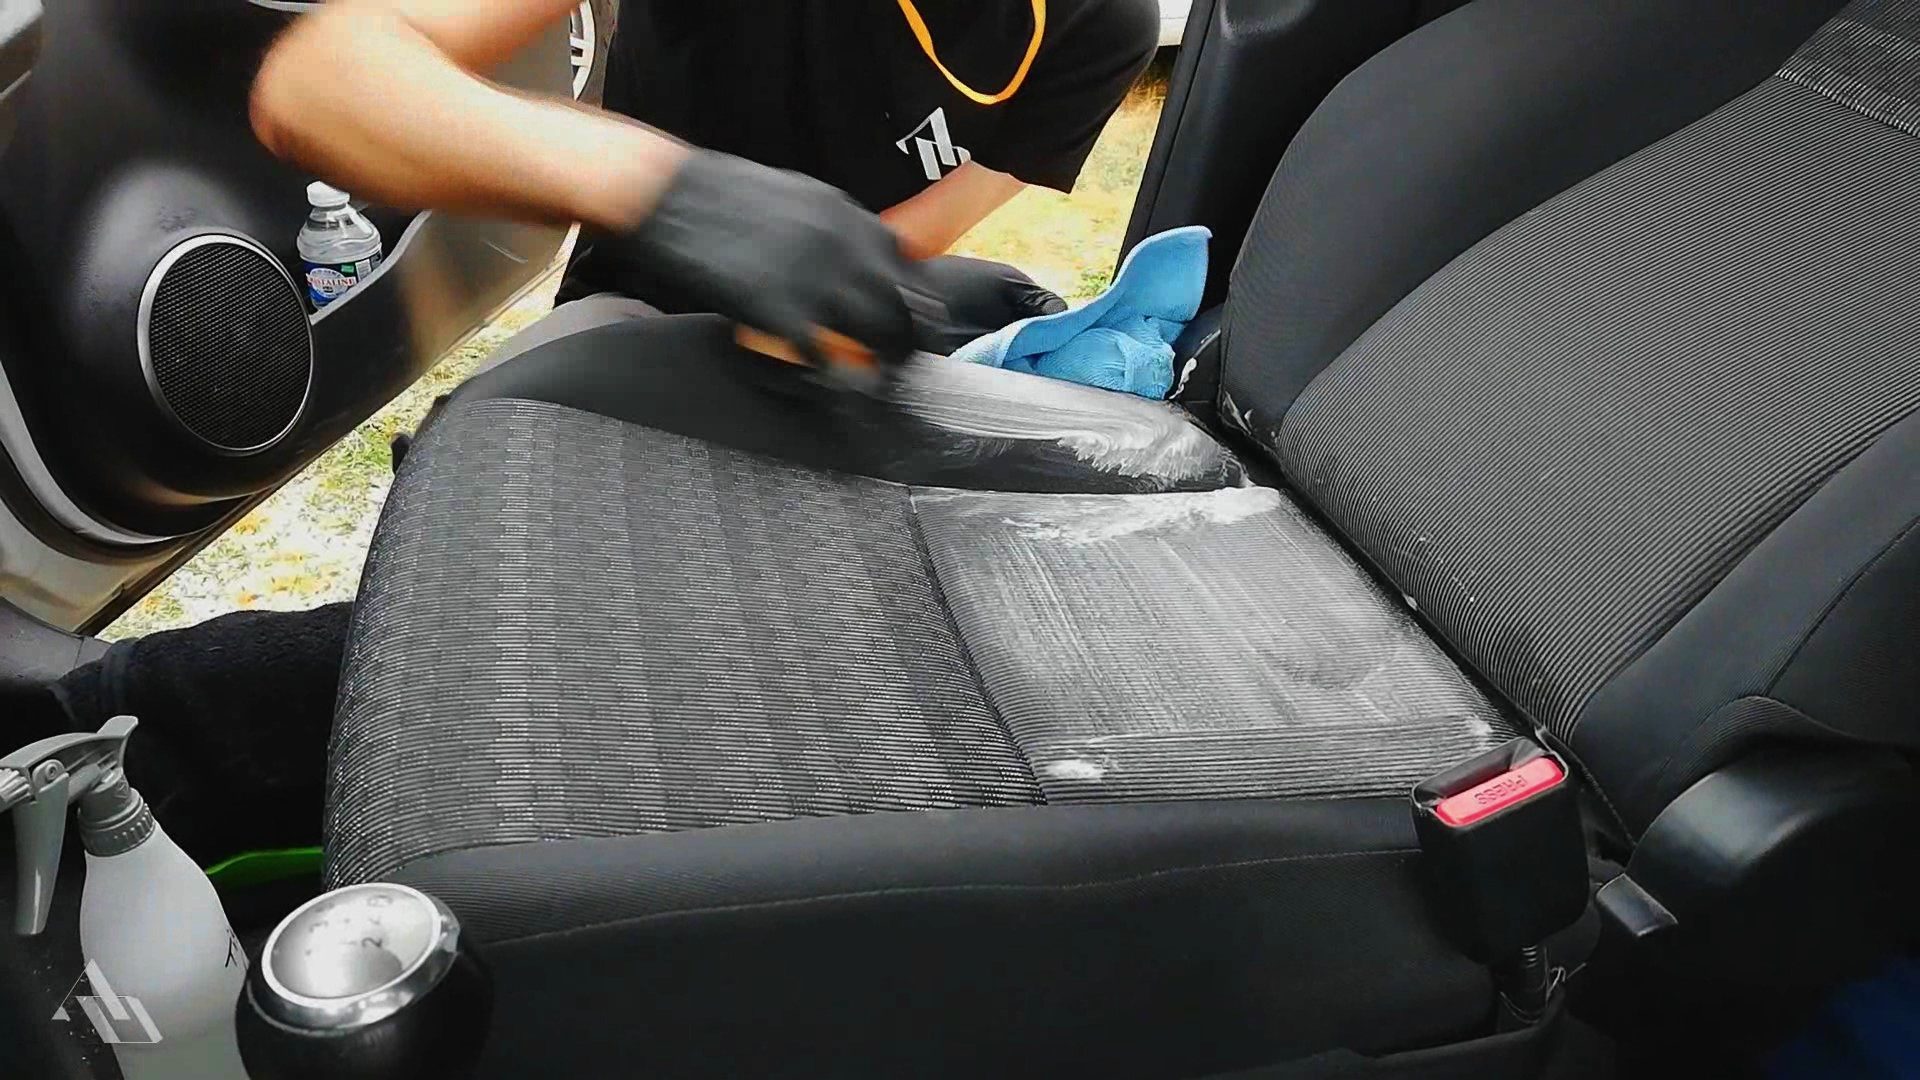 כיצד לנקות בקלות את מושבי המכונית שלך.